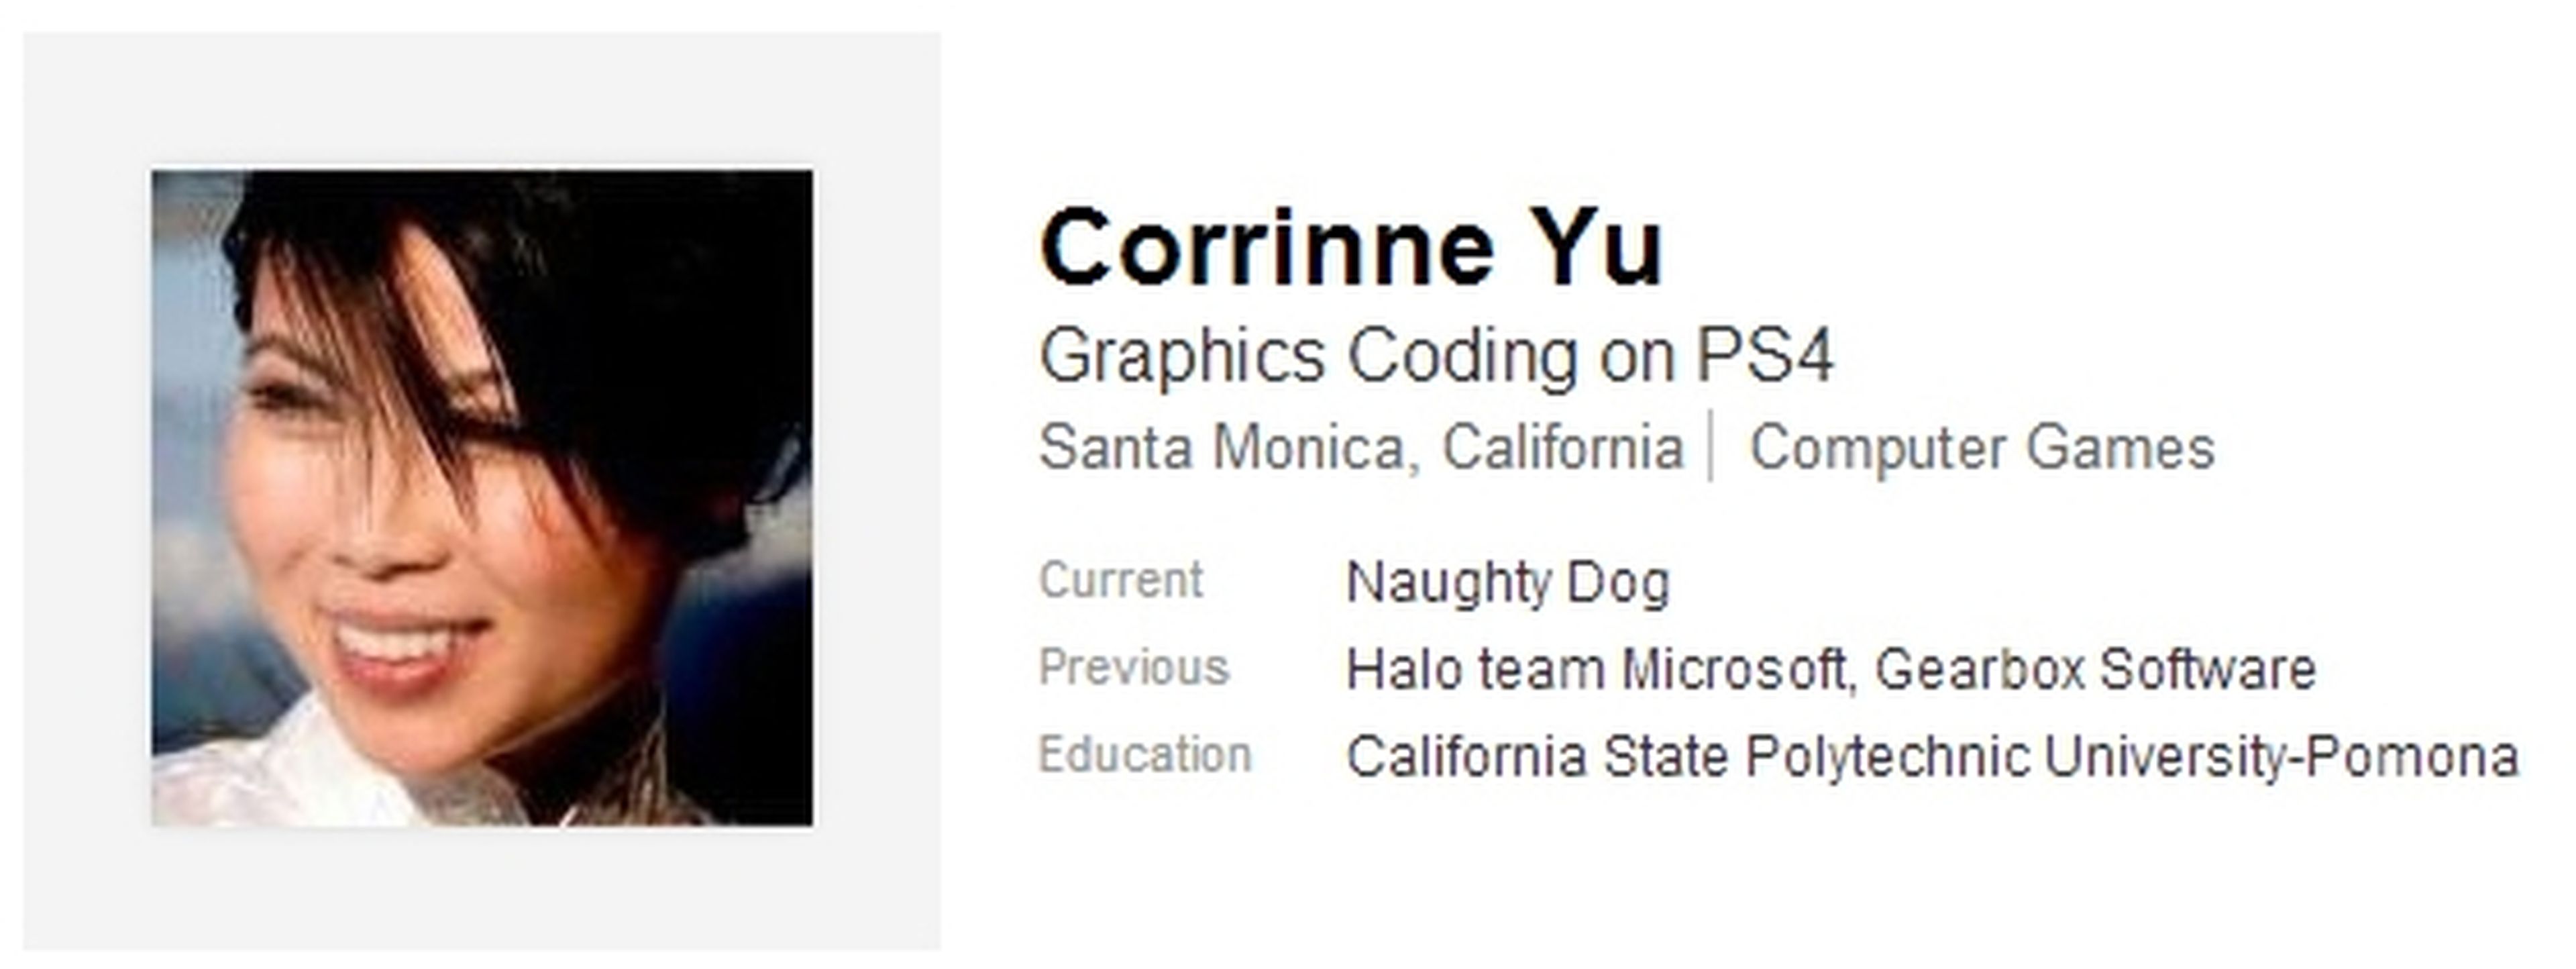 Corrinne Yu ficha por Naughty Dog